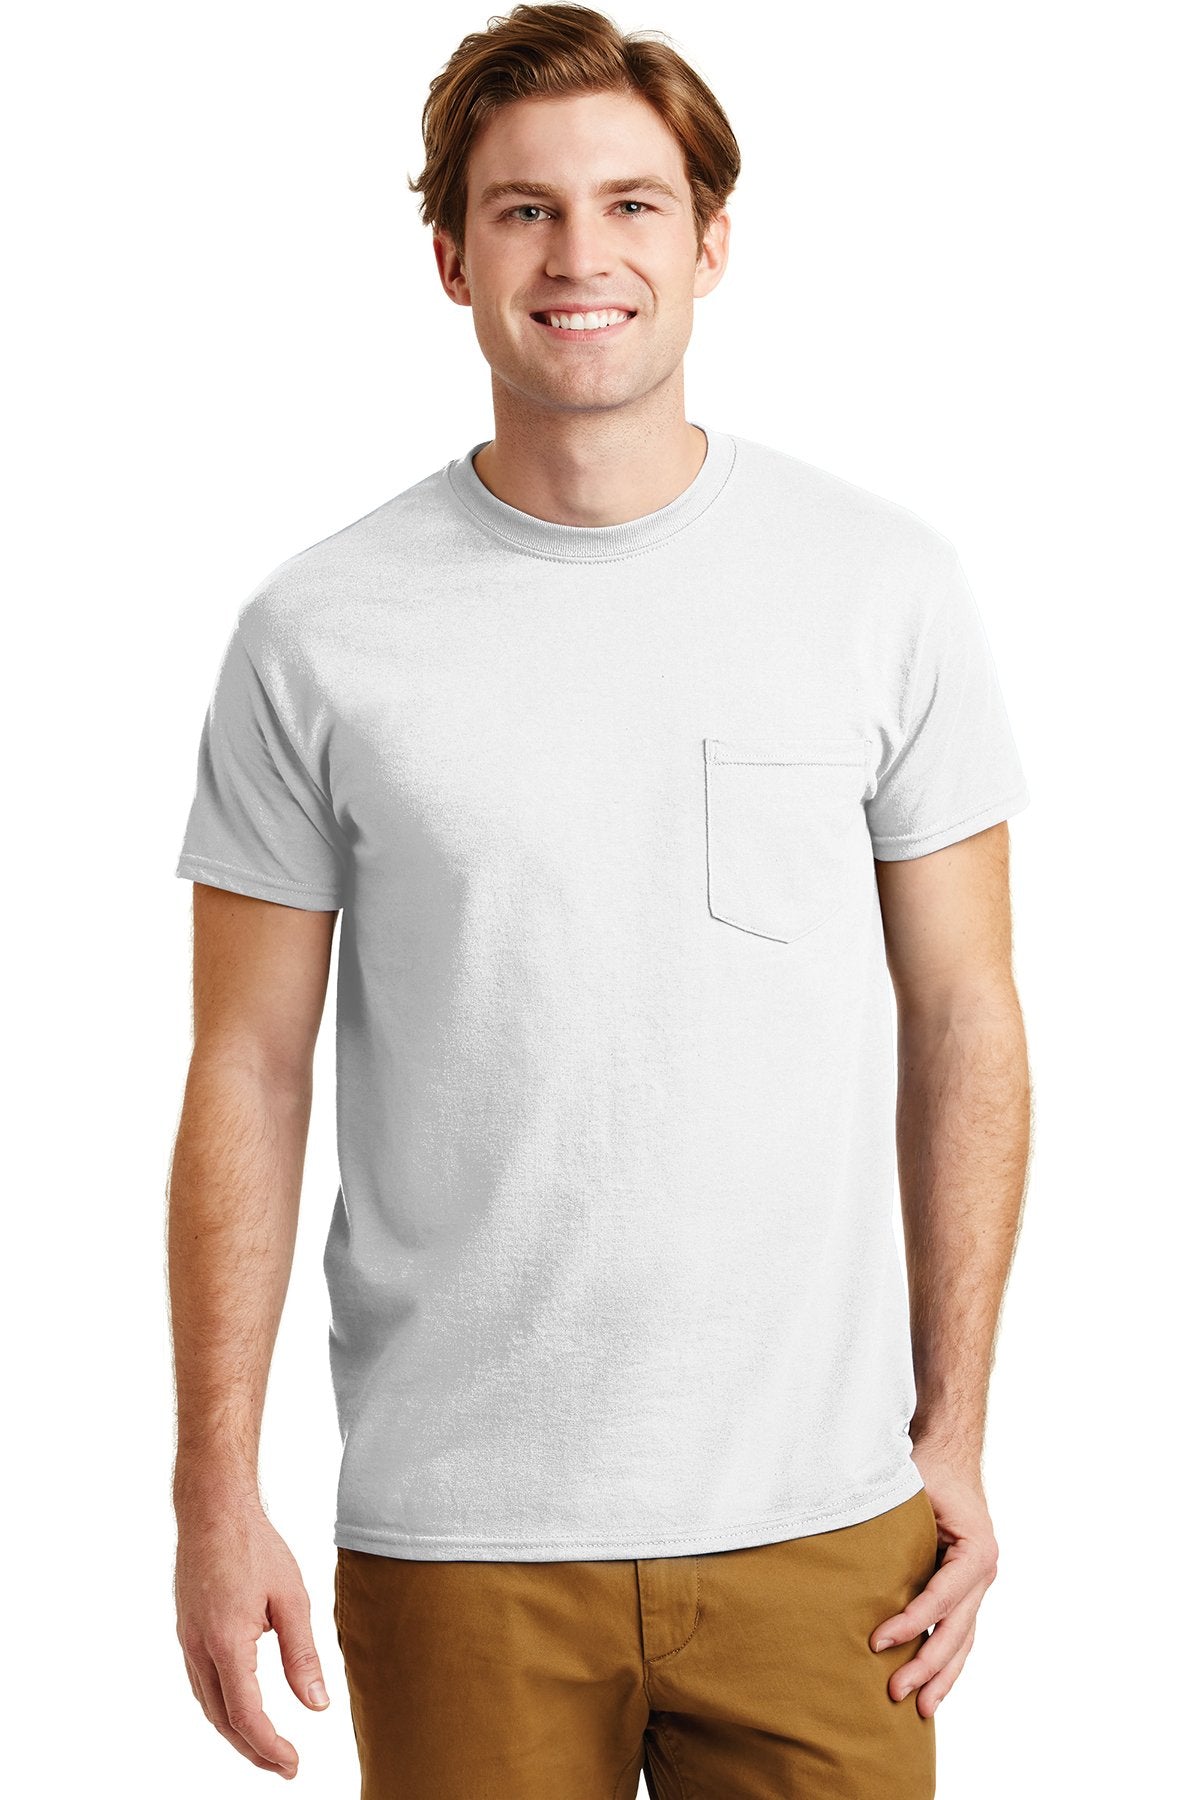 gildan dryblend cotton poly pocket t shirt 8300 white